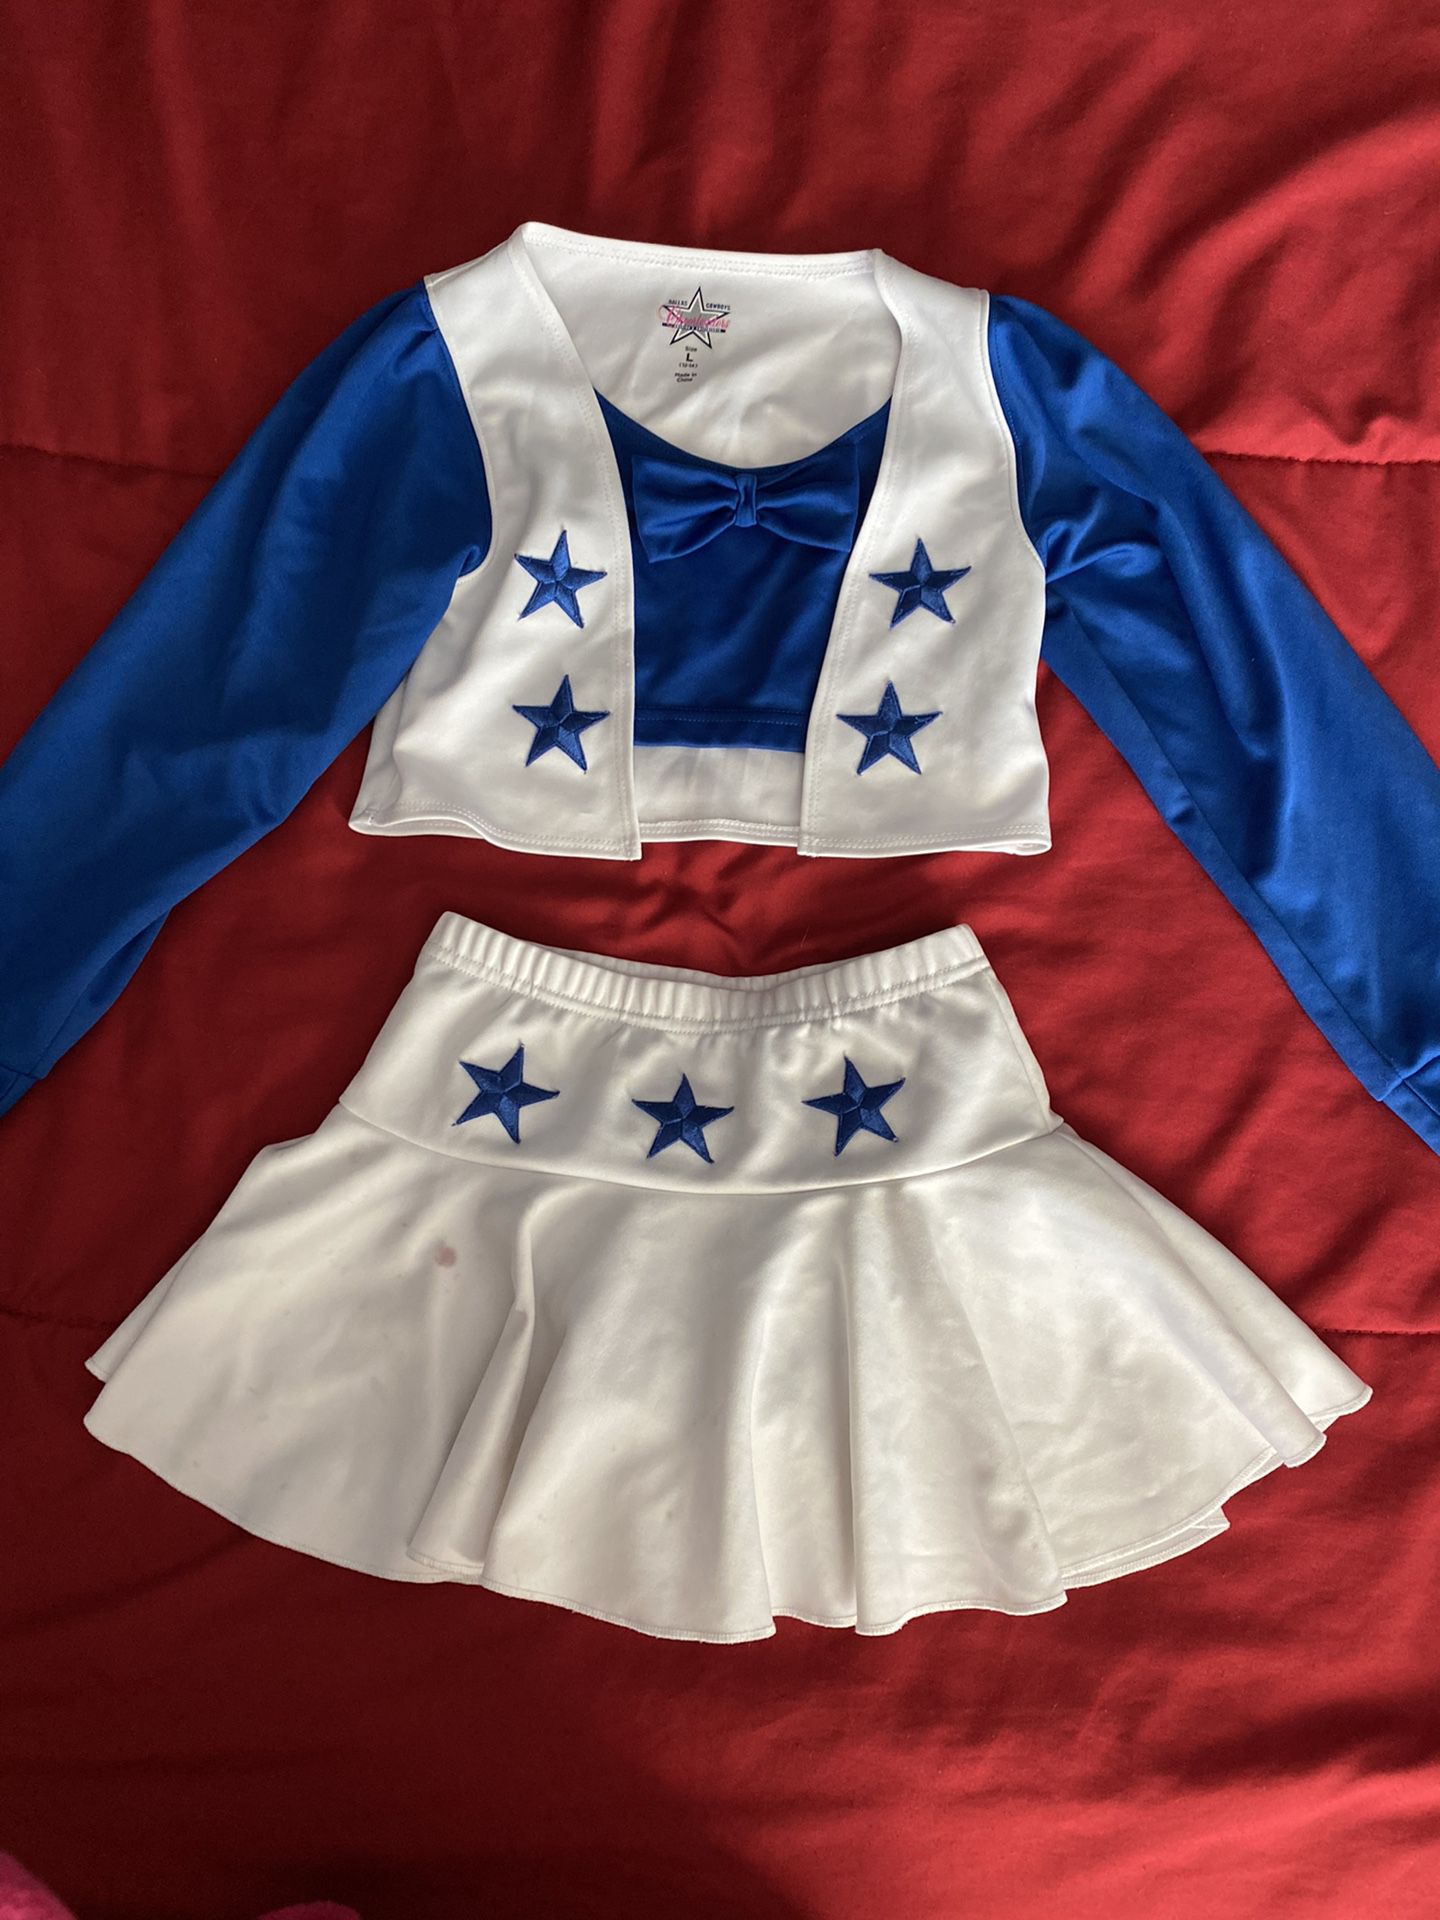 Dallas Cowboys Cheerleader Outfit for Sale in El Paso, TX - OfferUp